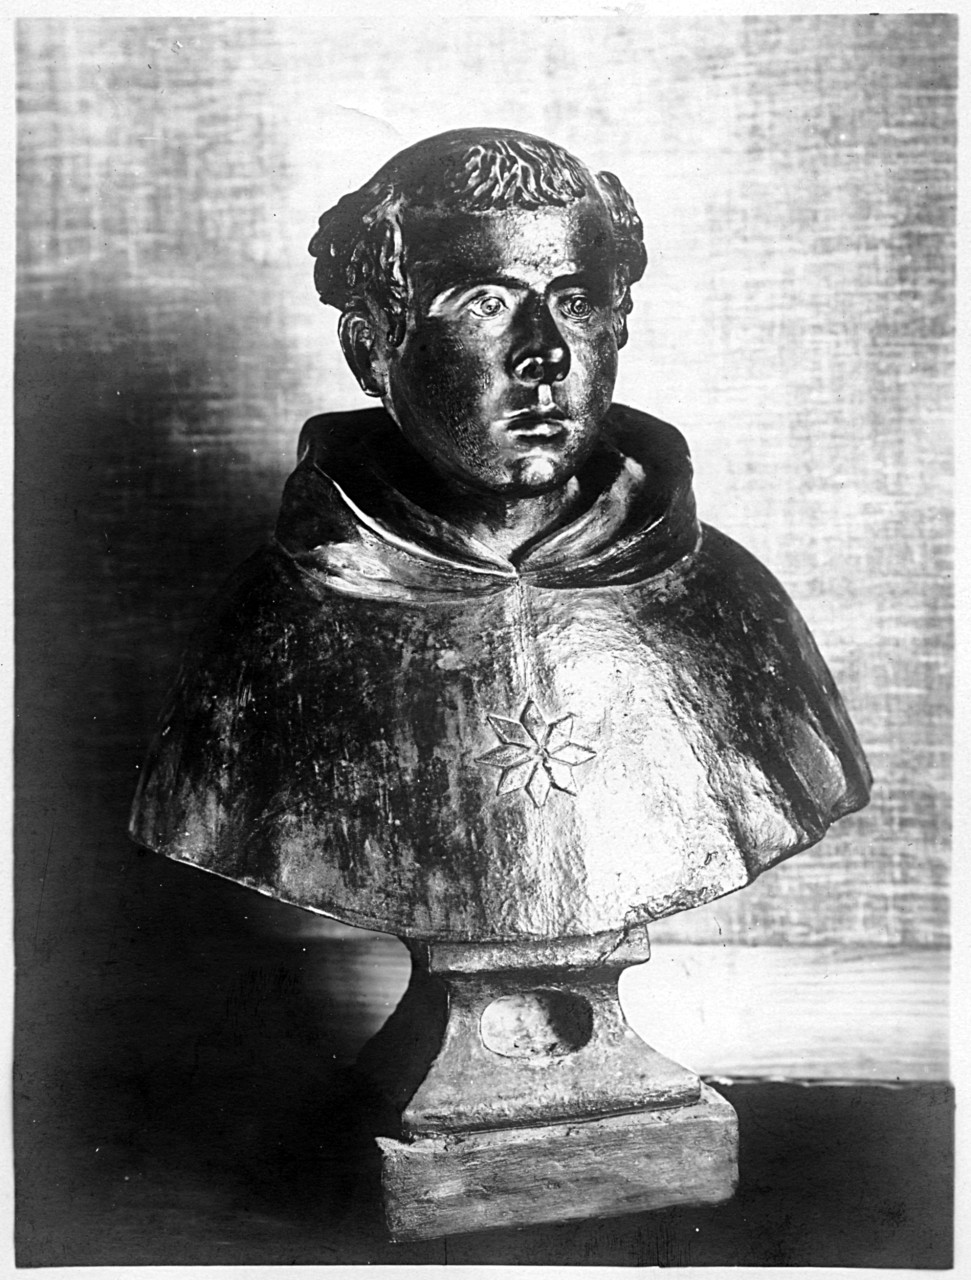 Collocazione ignota - Busto di monaco in terracotta (negativo) di Gabinetto fotografico del Polo Museale Fiorentino (laboratorio) - ambito toscano (primo quarto XX)